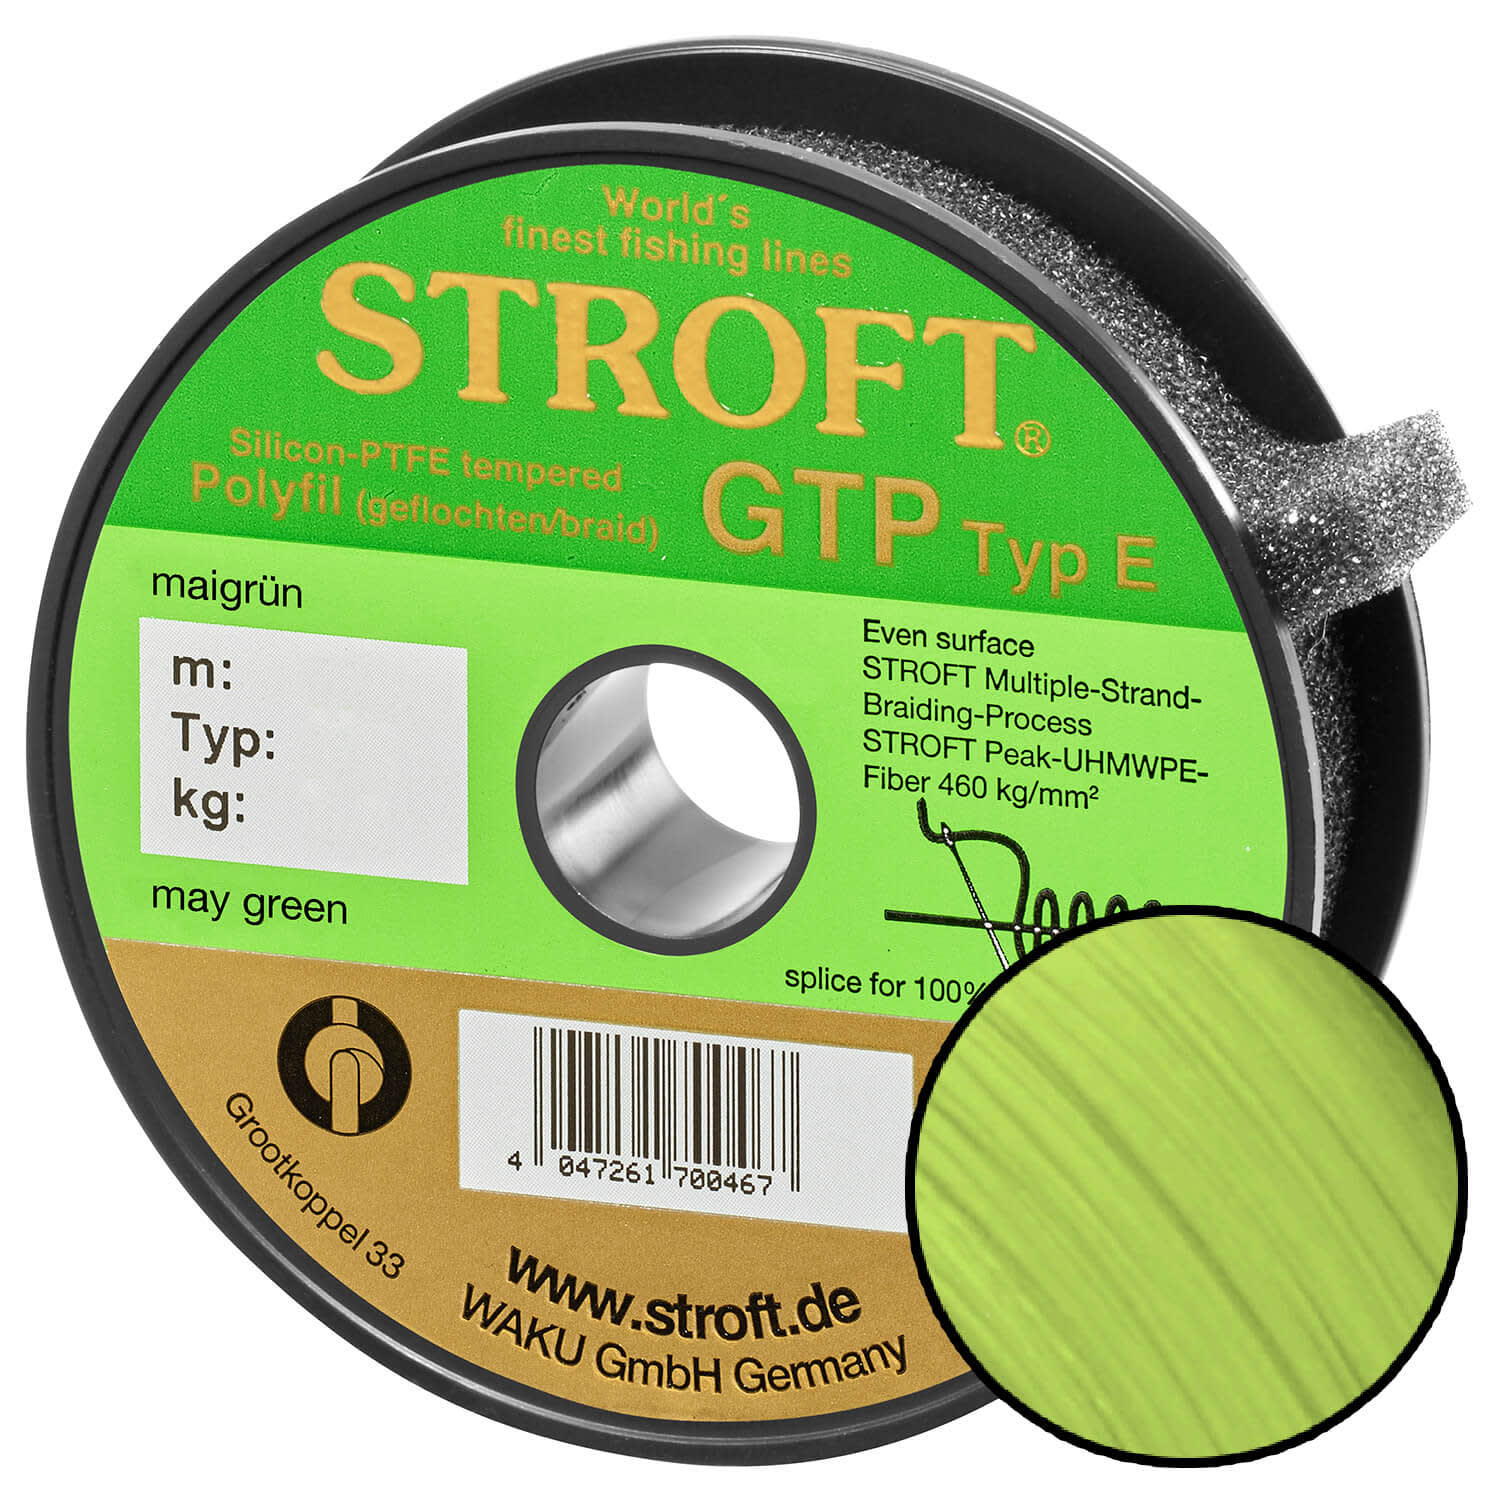 STROFT GTP E 250 m Maigrün may green Geflochtene Angelschnur von E06 bis E8 